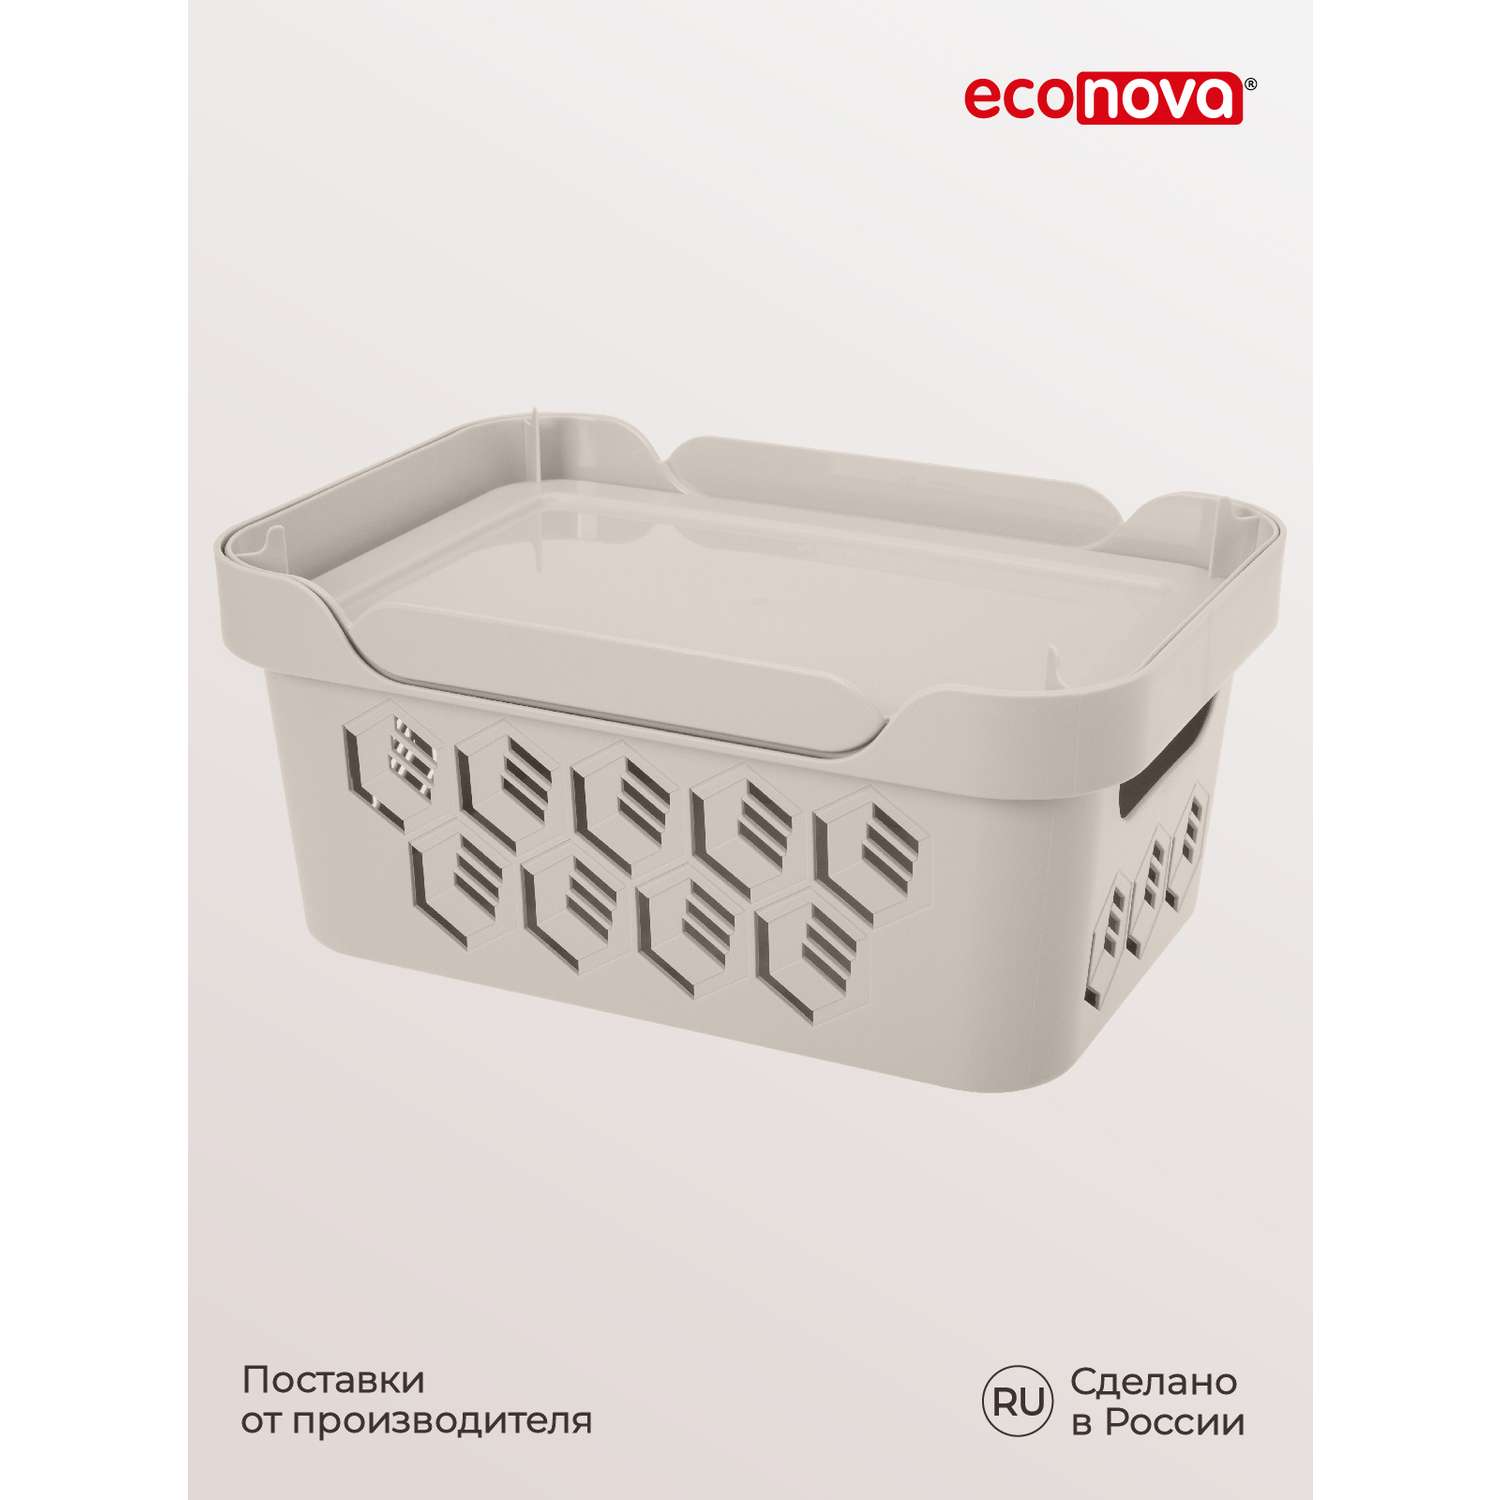 Коробка Econova с крышкой DELUXE 4.6Л светло-бежевая - фото 10